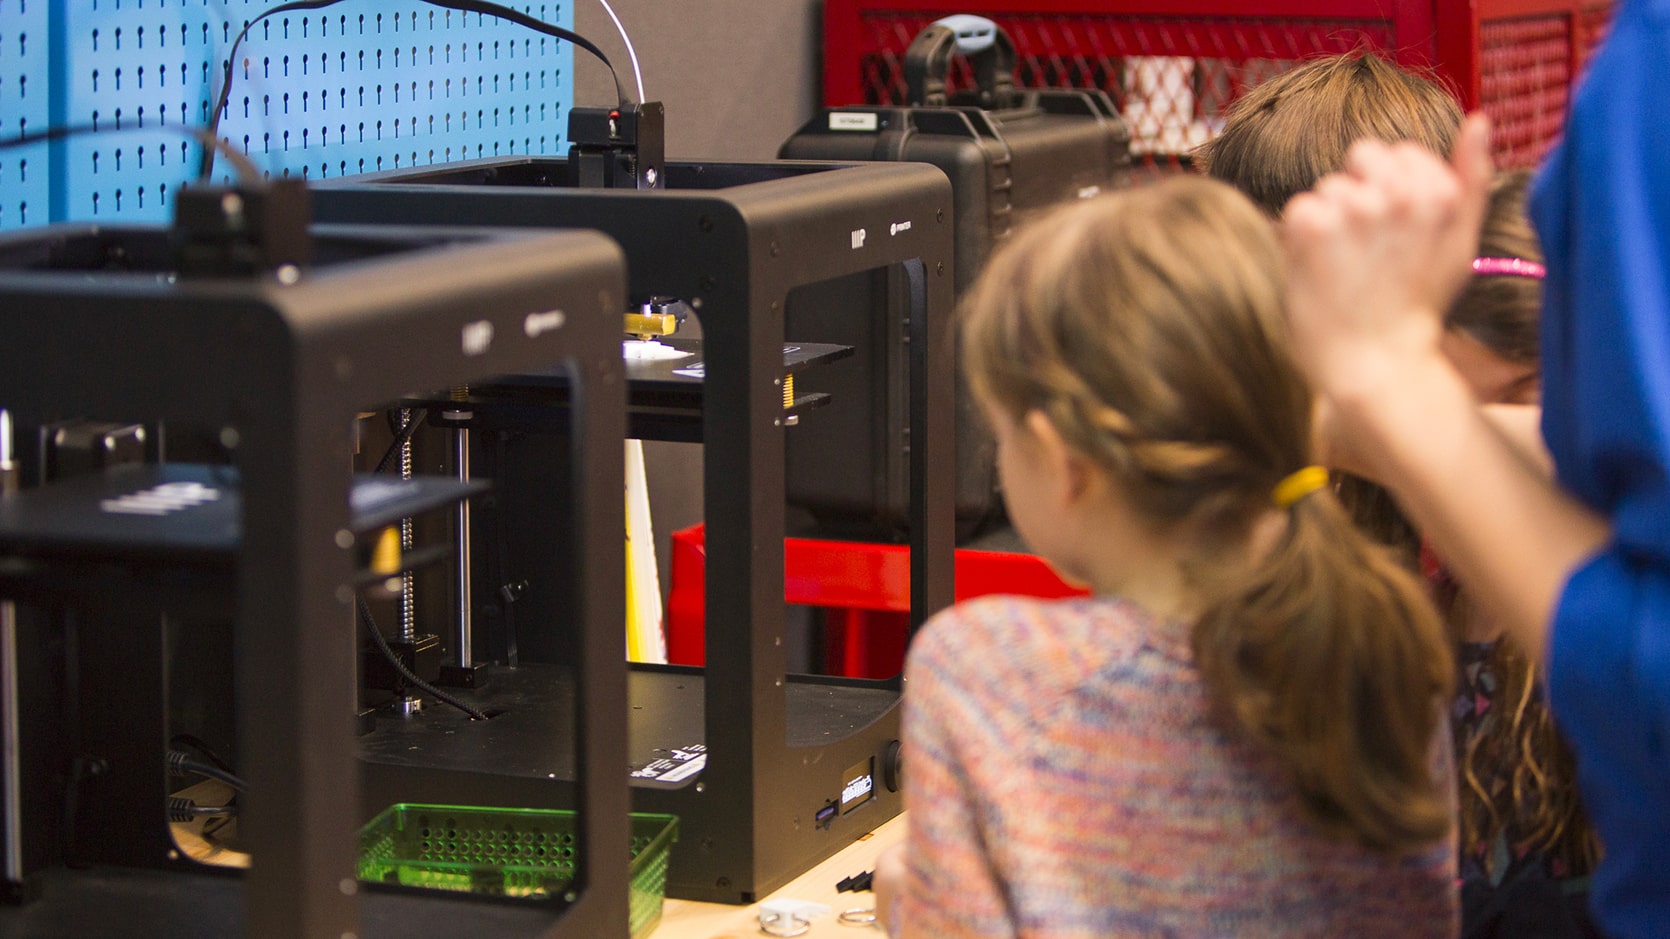 Deux enfants admirent une imprimante 3D en action.